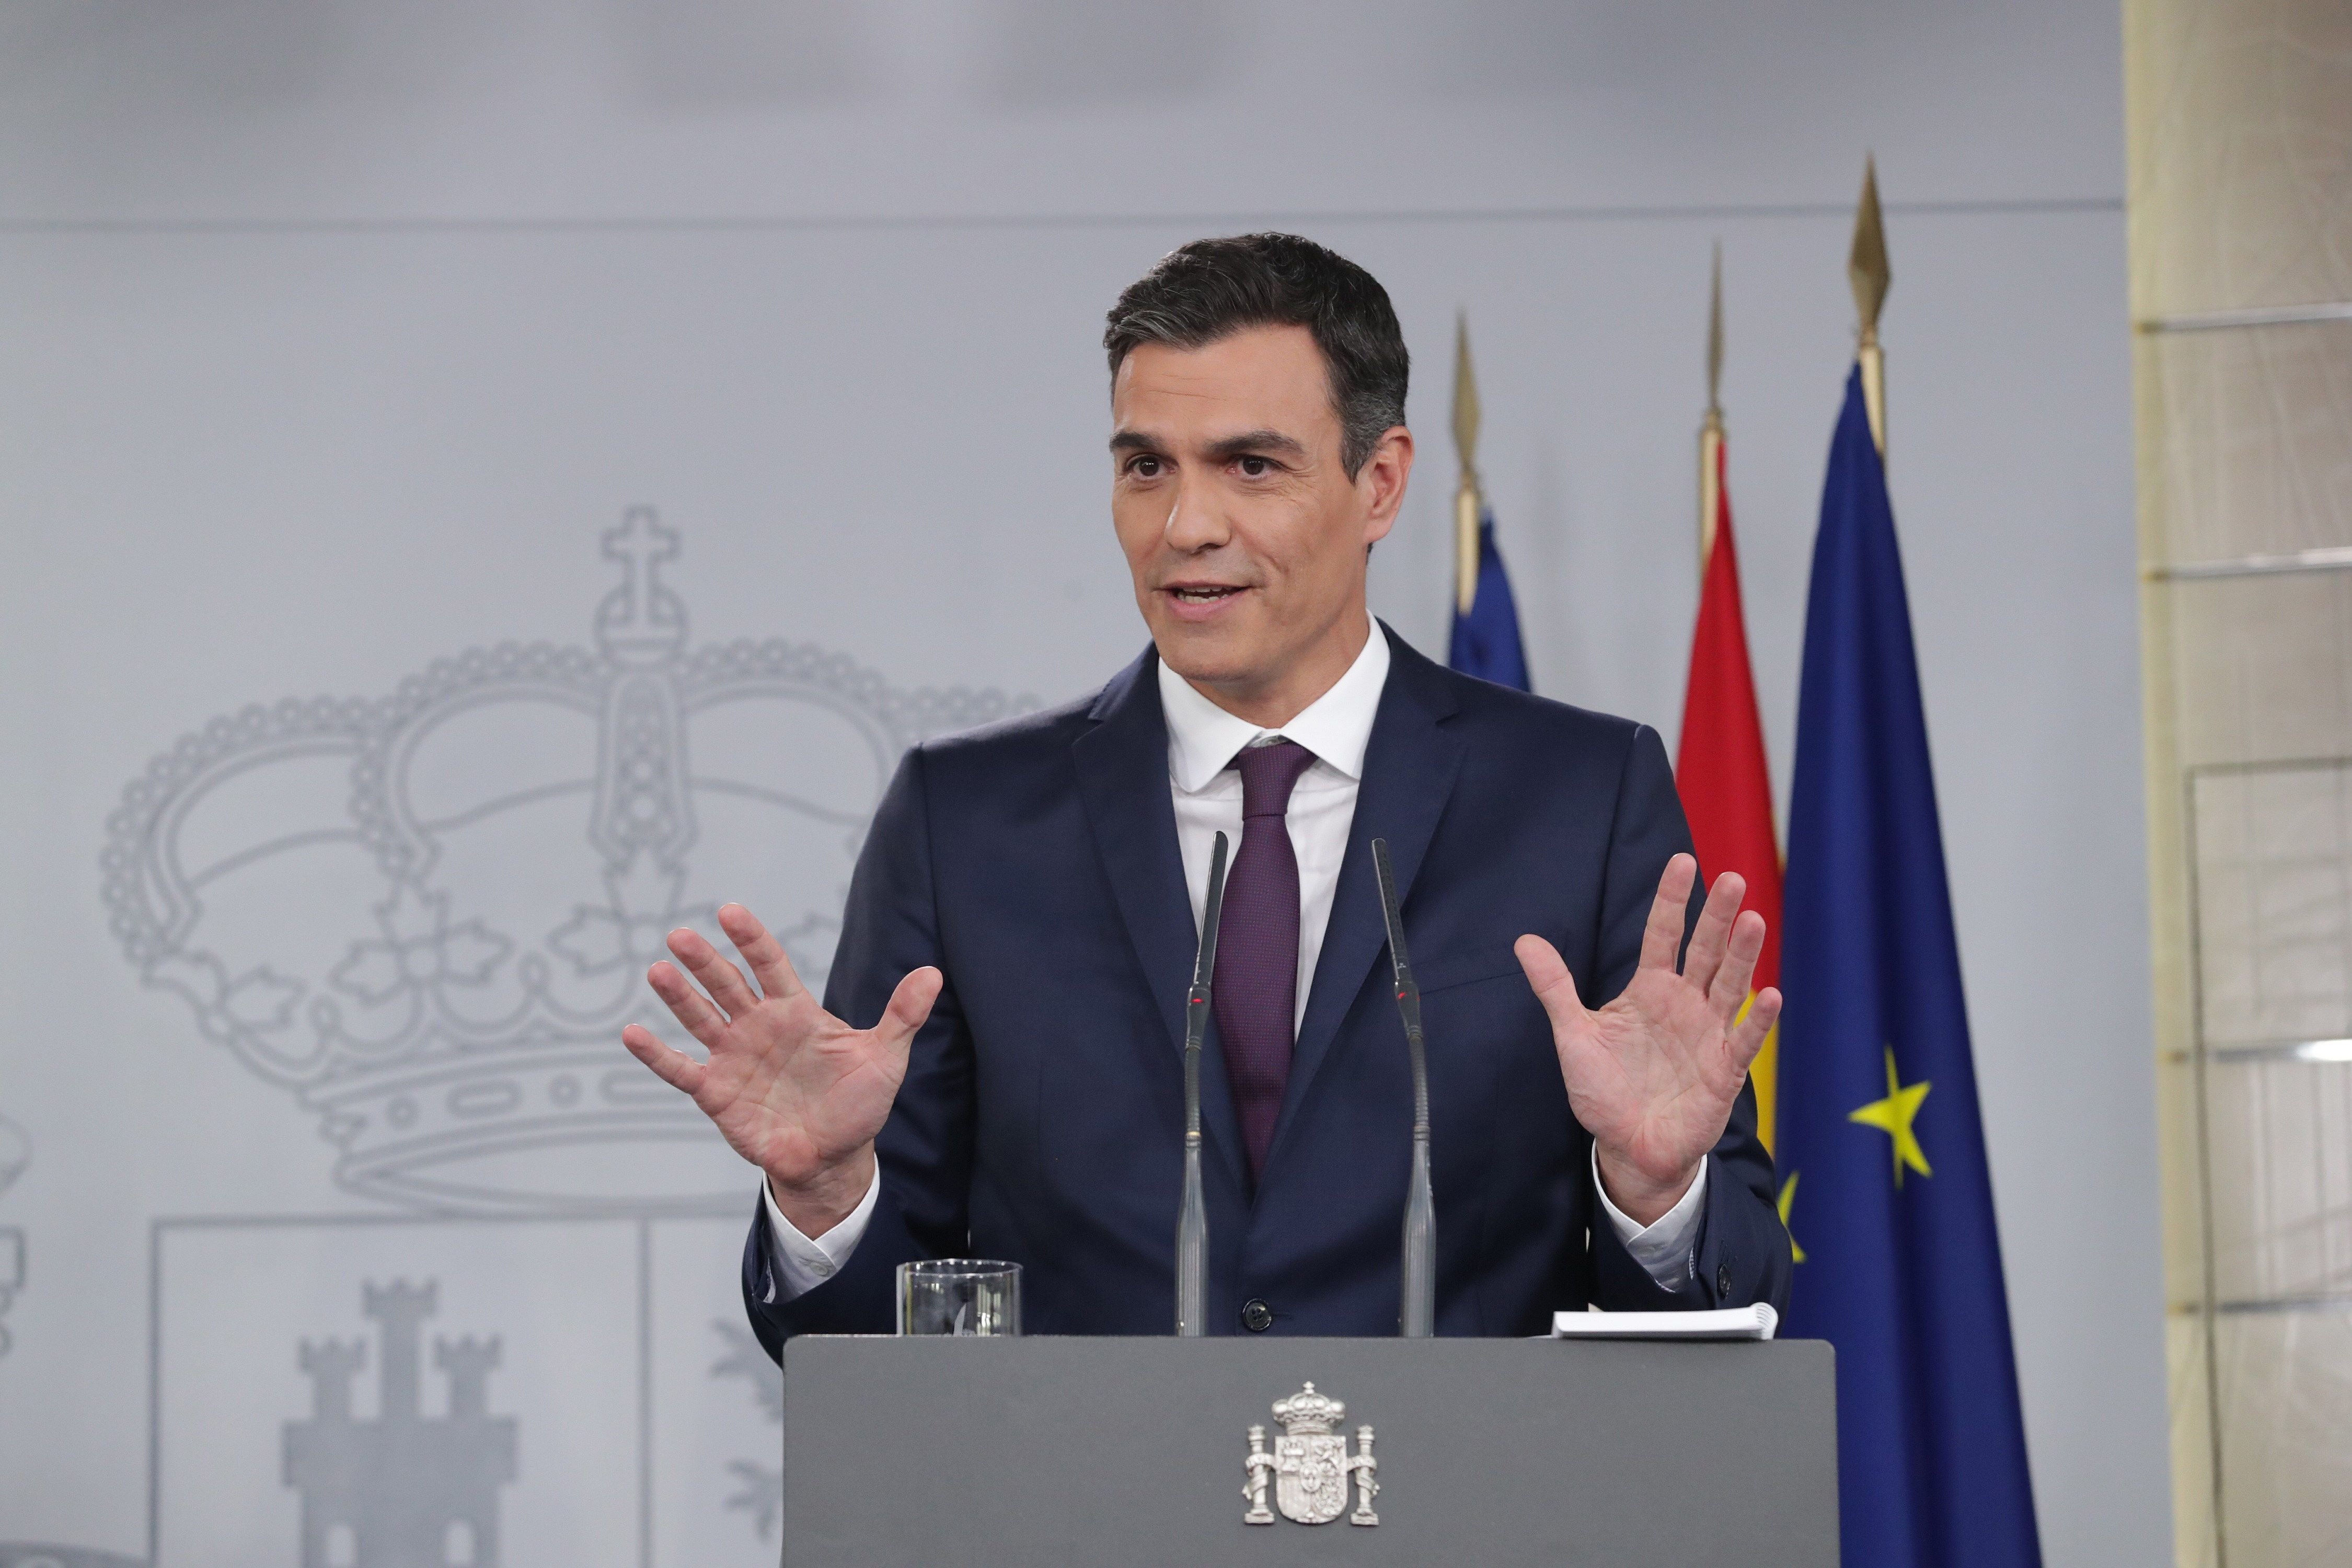 La por s'apodera de la premsa espanyola, que maleeix i rebutja la reunió bilateral